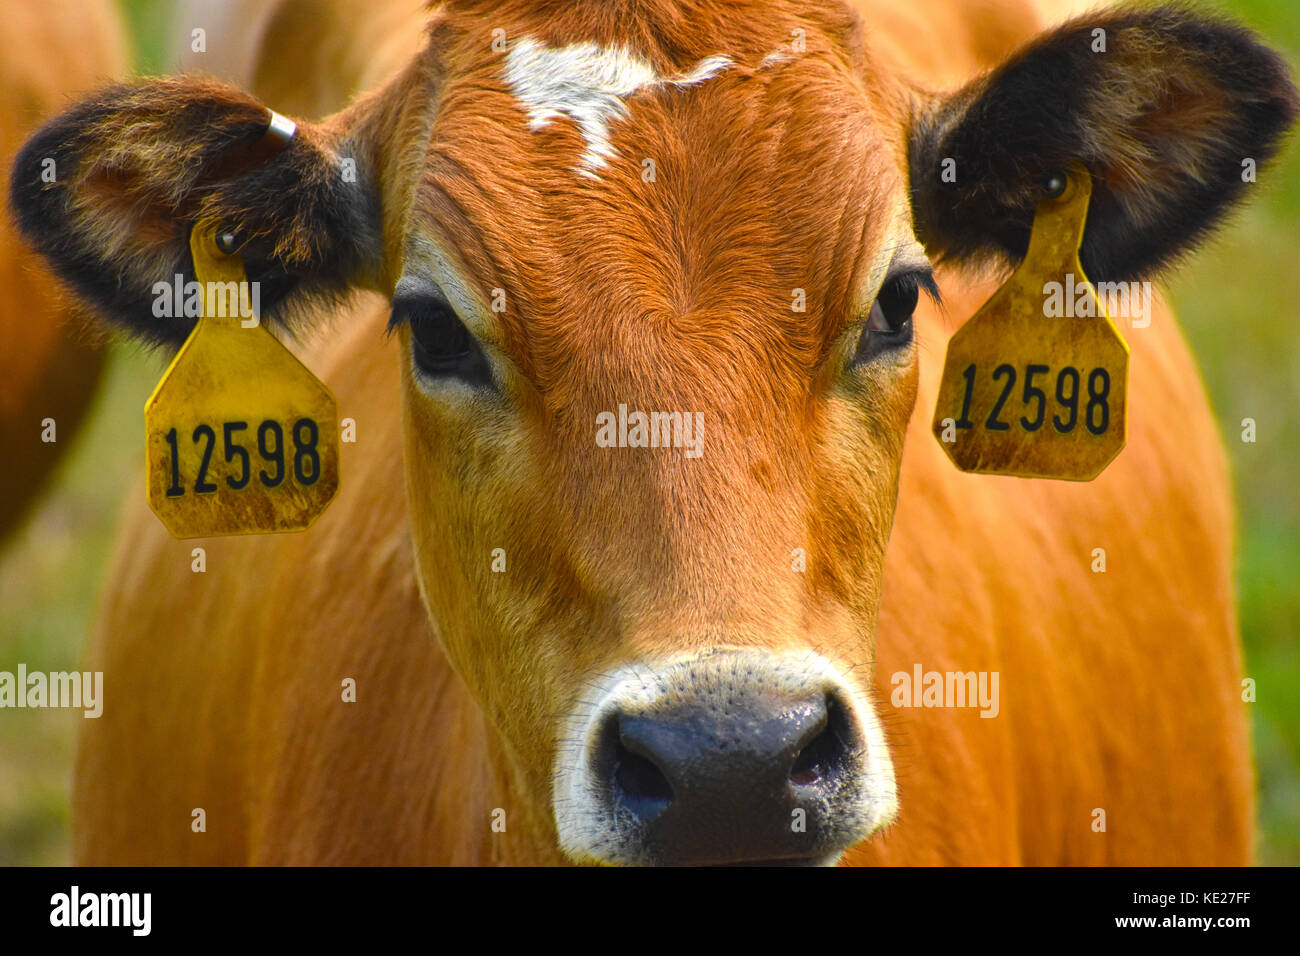 Kuh Gesicht und Kopf Nahaufnahme mit Tags in Ihren Ohren Ihre ID-Nummer angezeigt. Stockfoto